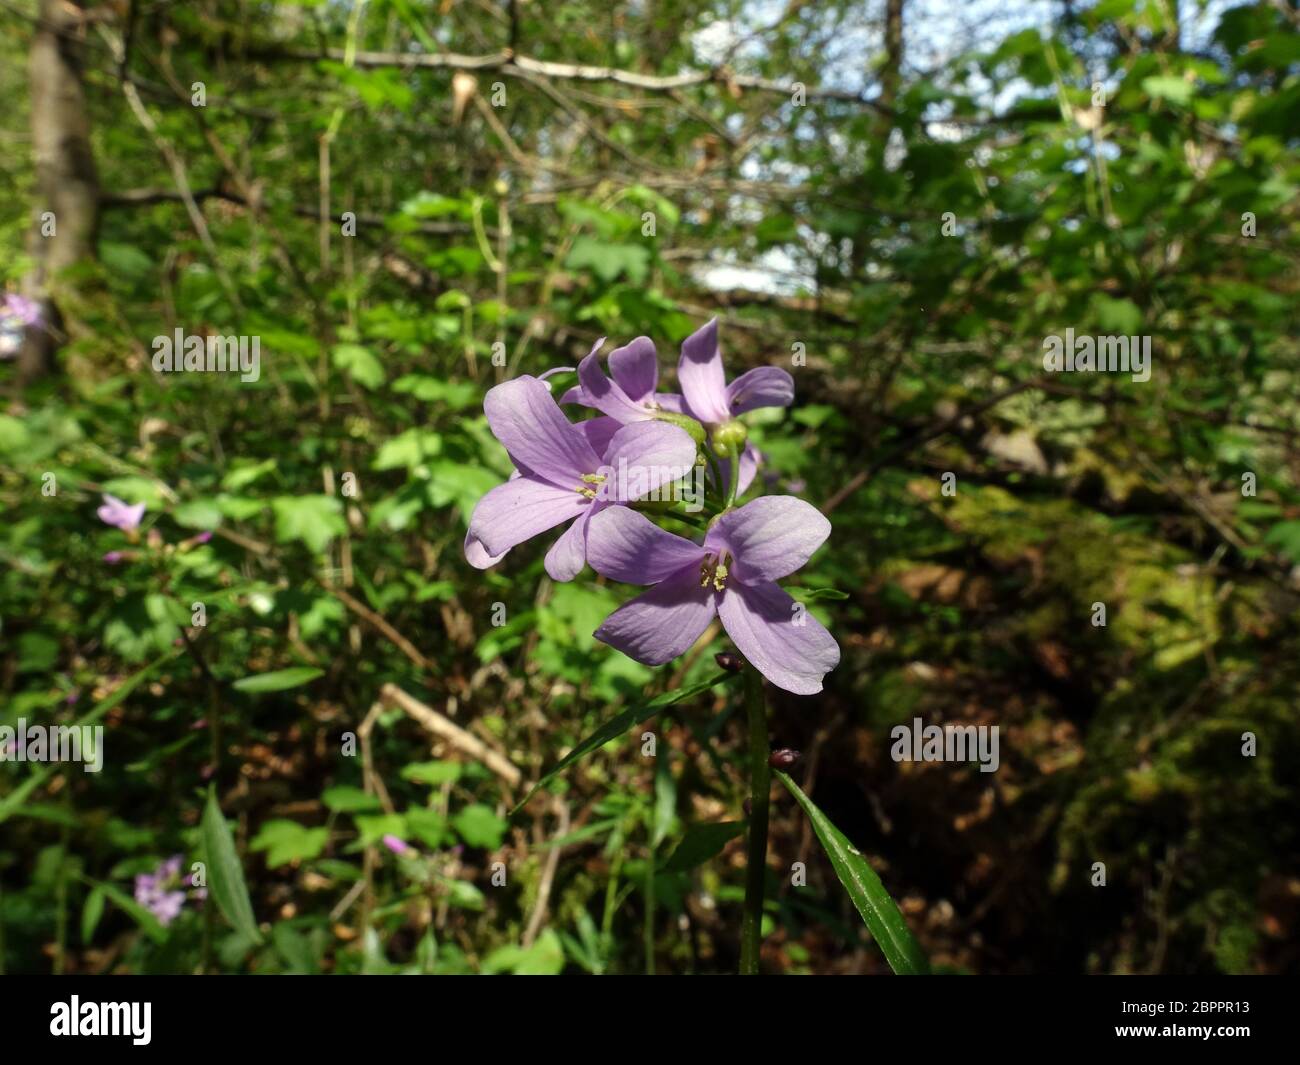 Zwiebel-Zahnwurz (Cardamine bulbifera) - blühende Pflanze im Wald, Üxheim, Rheinland-Pfalz, Deutschland Stock Photo